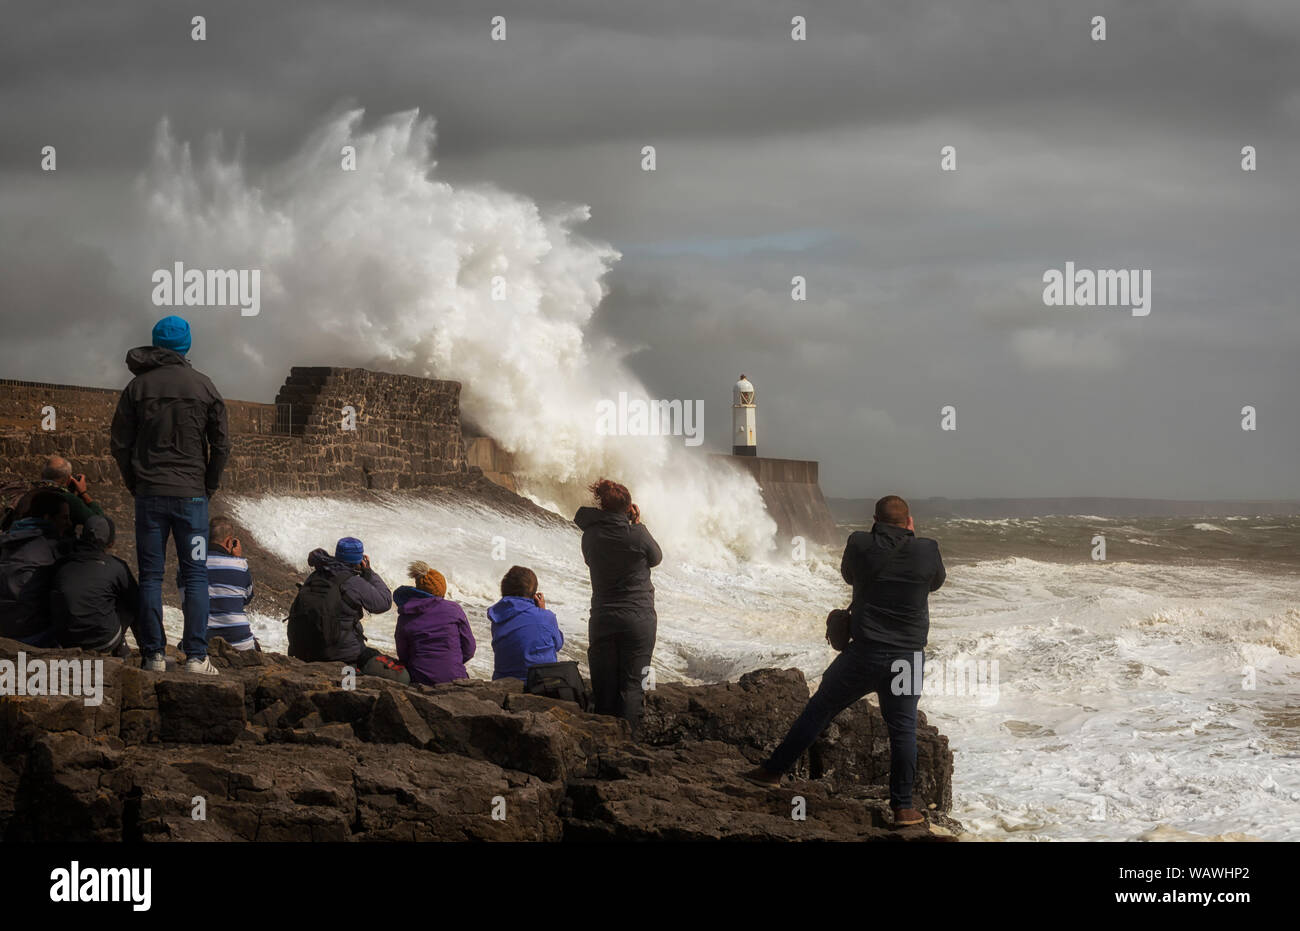 Photographers at Porthcawl lighthouse Stock Photo